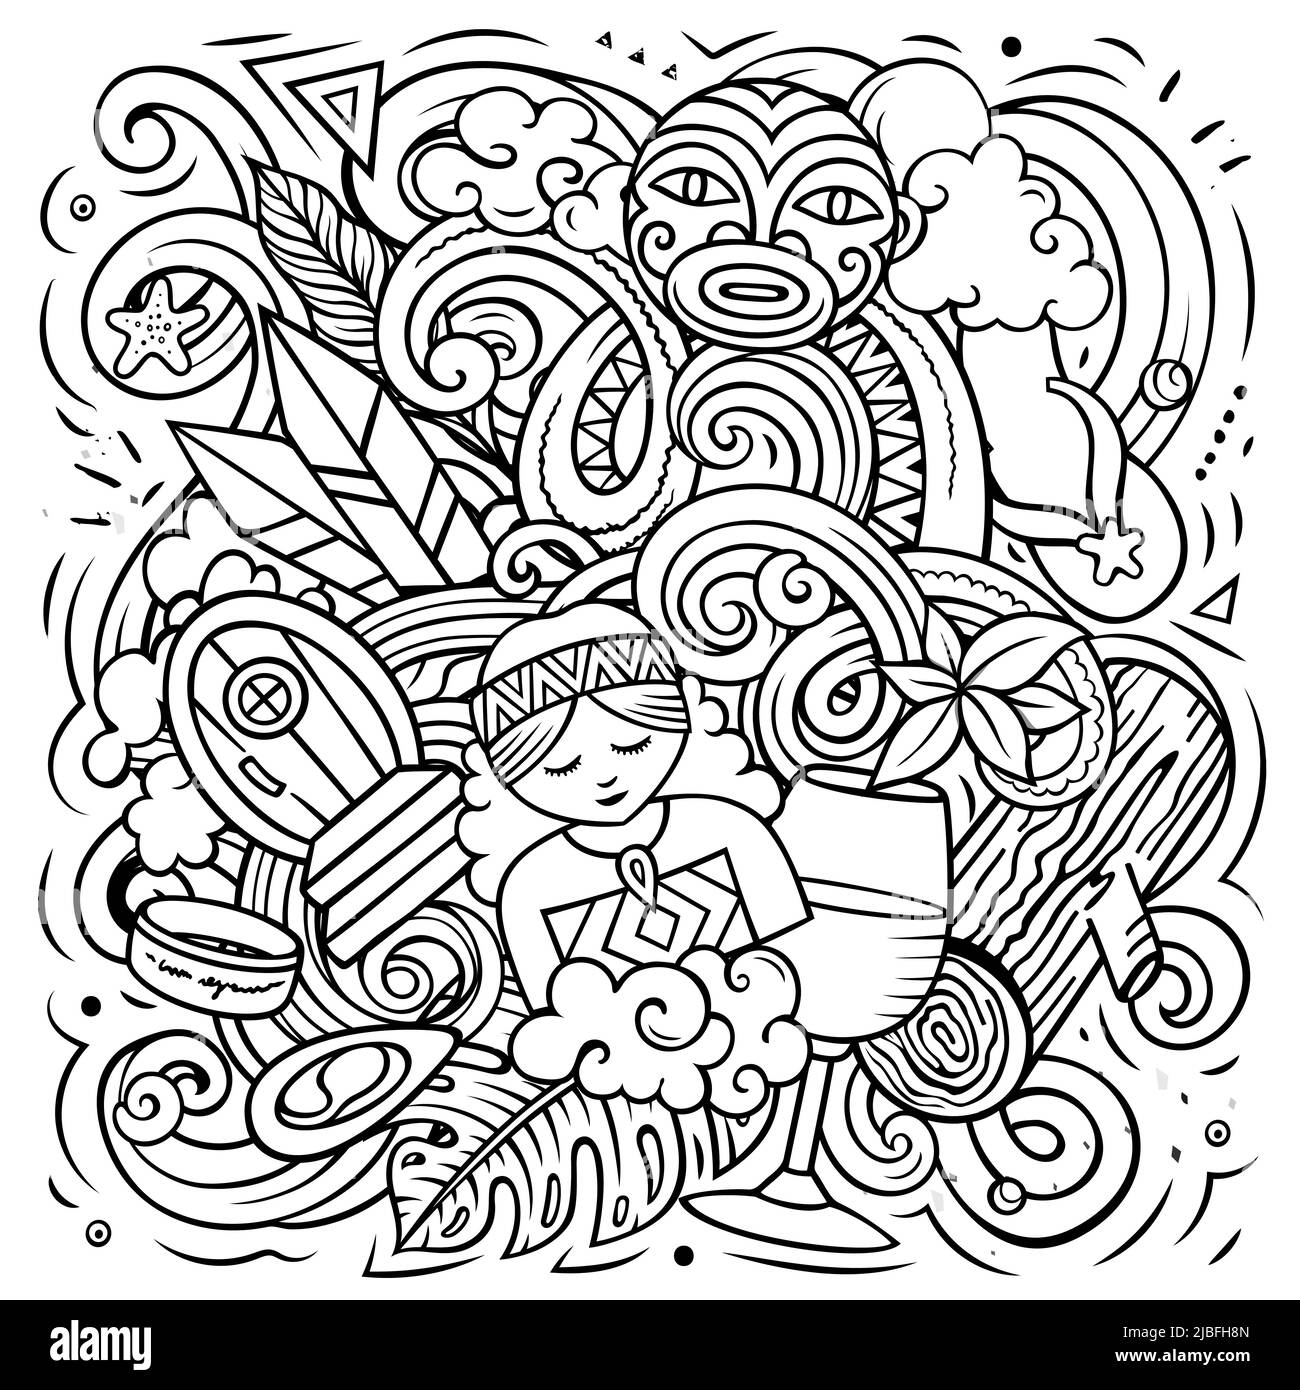 Nuova Zelanda disegno a mano cartoon doodle illustrazione. Divertente design locale. Illustrazione Vettoriale